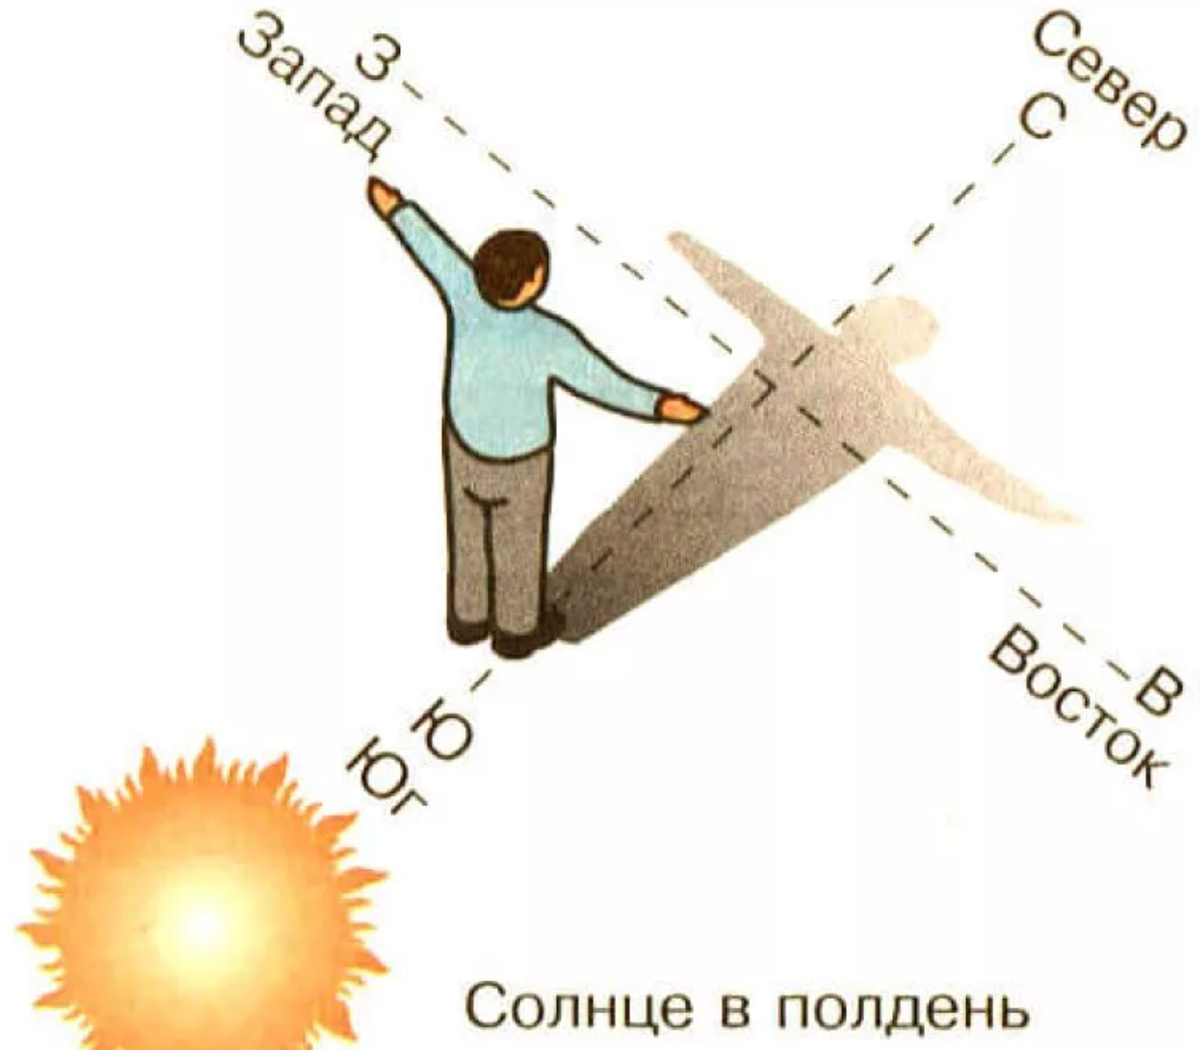 Противоположная сторона солнца. Ориентирование на местности по солнцу. Как определить стороны света по солнцу. Как ориентироваться по солнцу картинки. Как ориентироваться по солнцу в полдень.